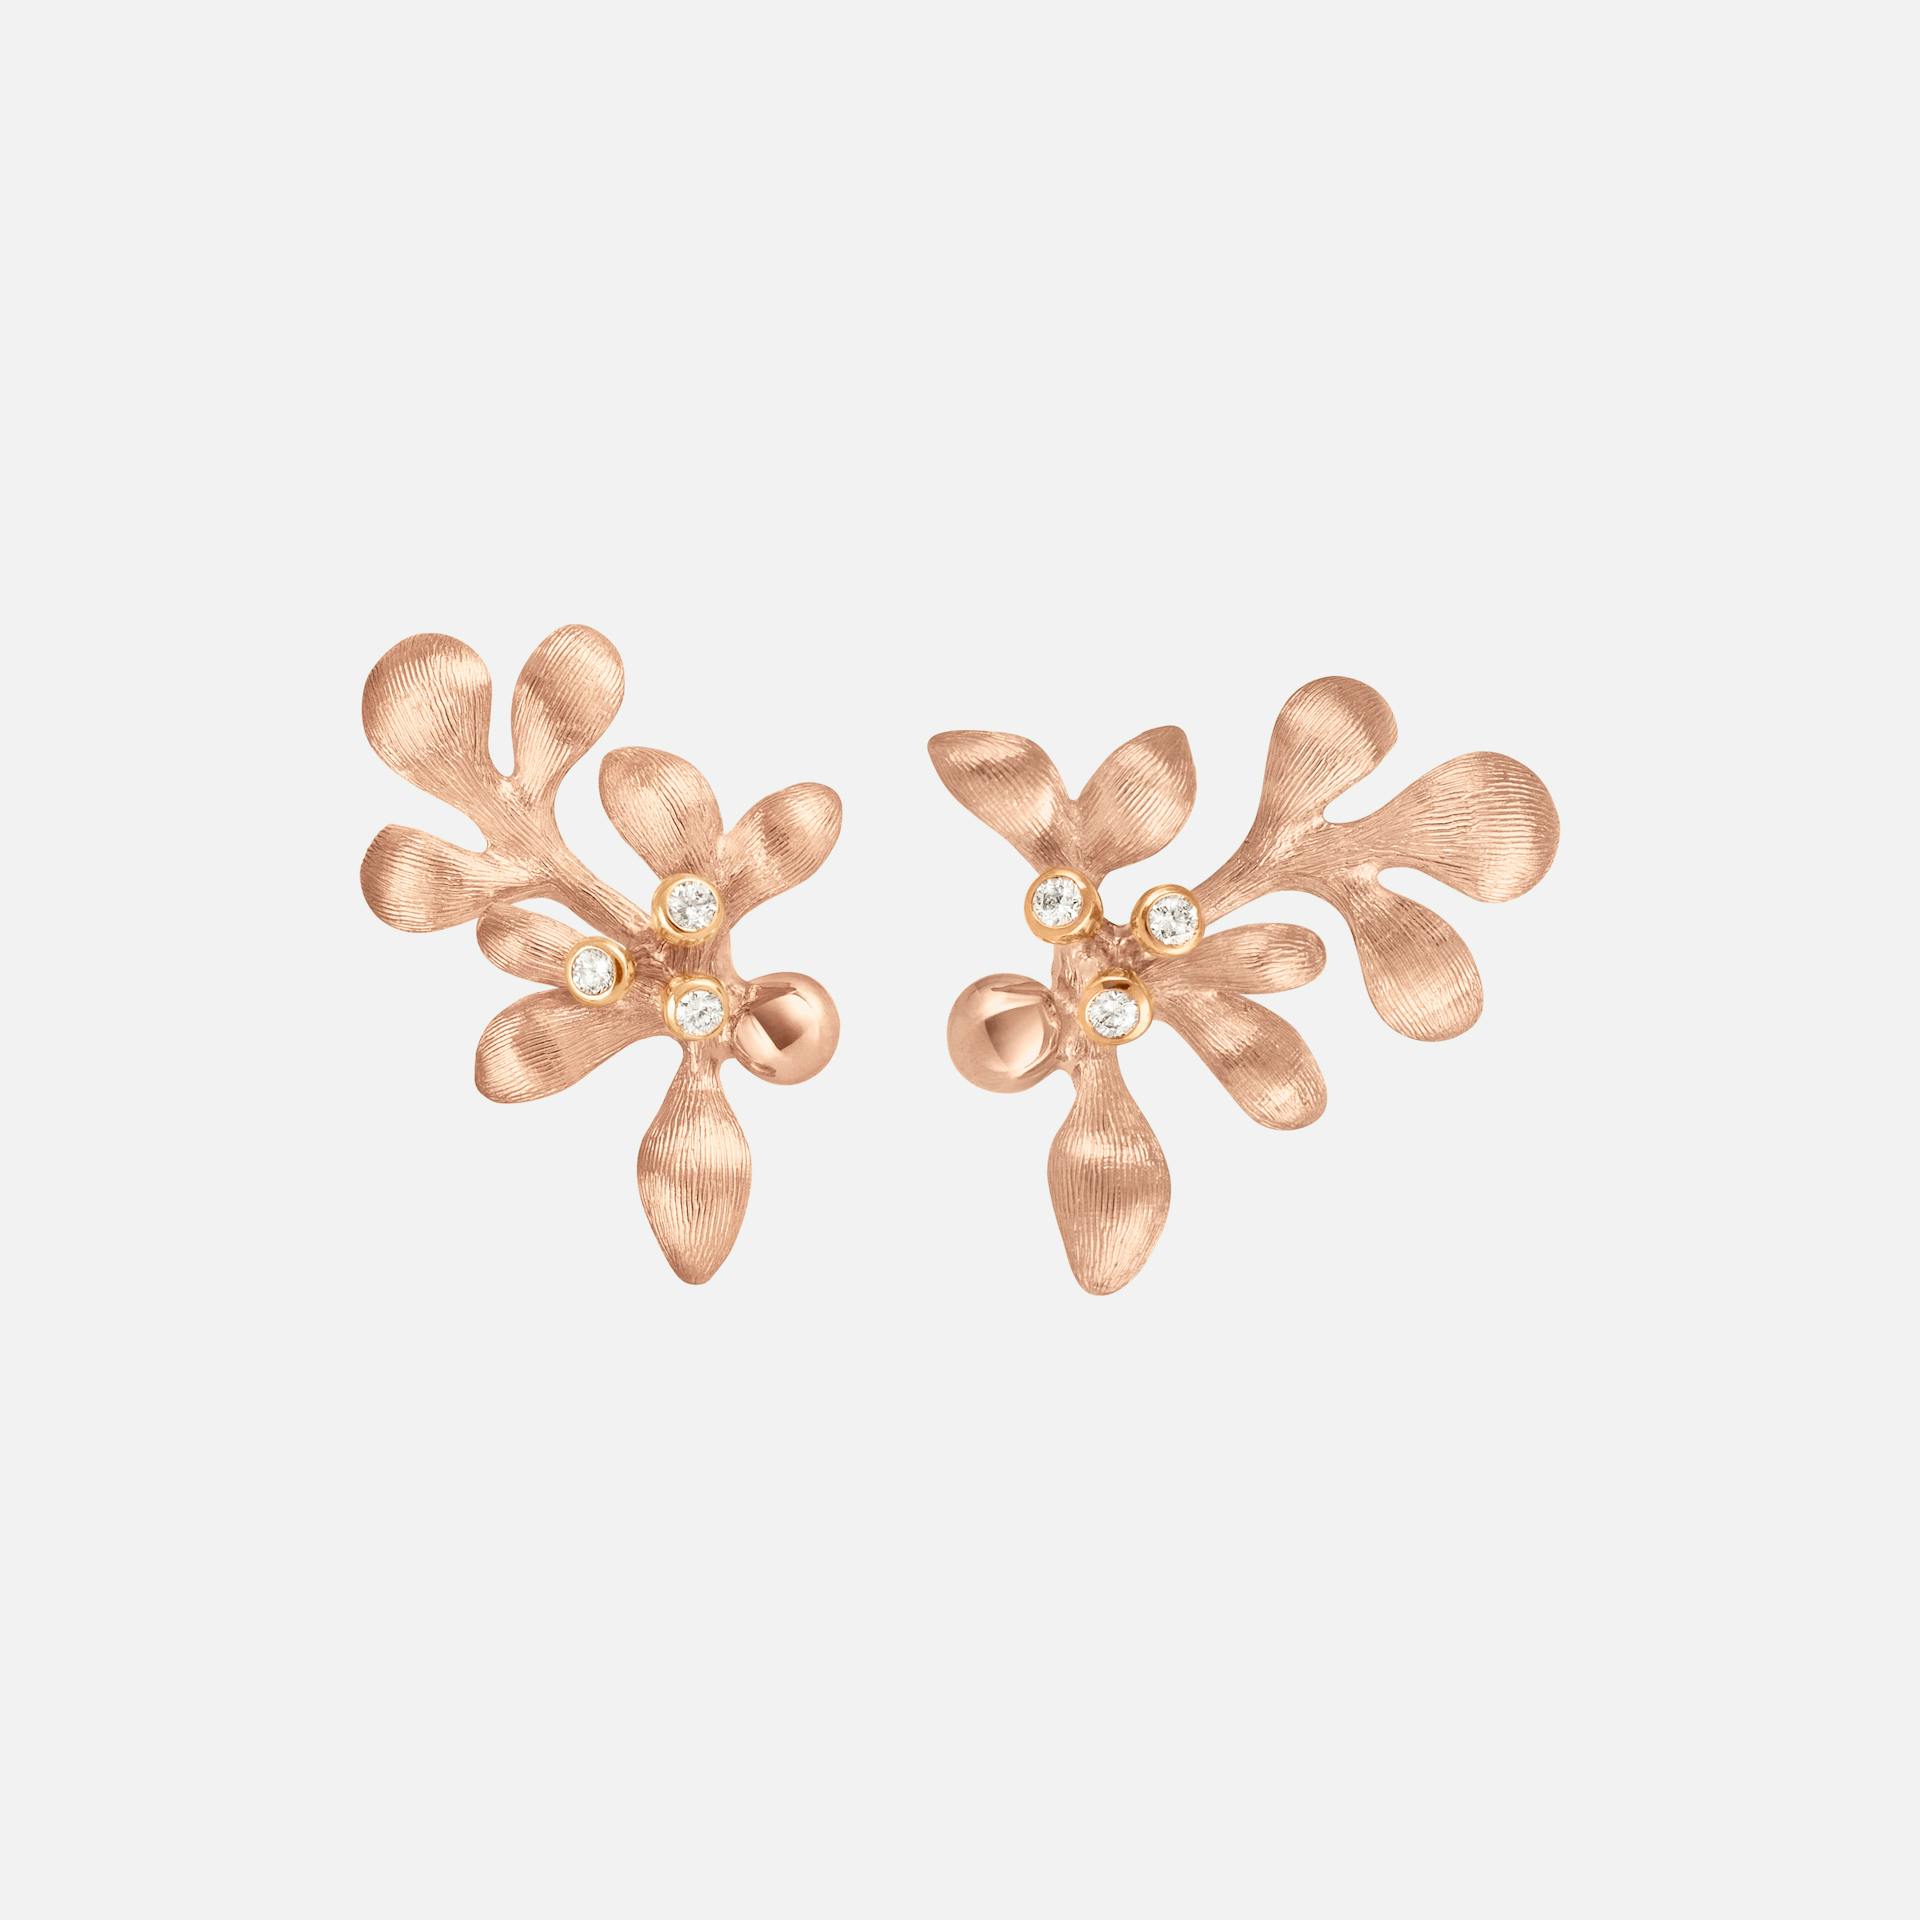 Gipsy Stud Earrings in 18 Karat Rose Gold with Diamonds | Ole Lynggaard Copenhagen